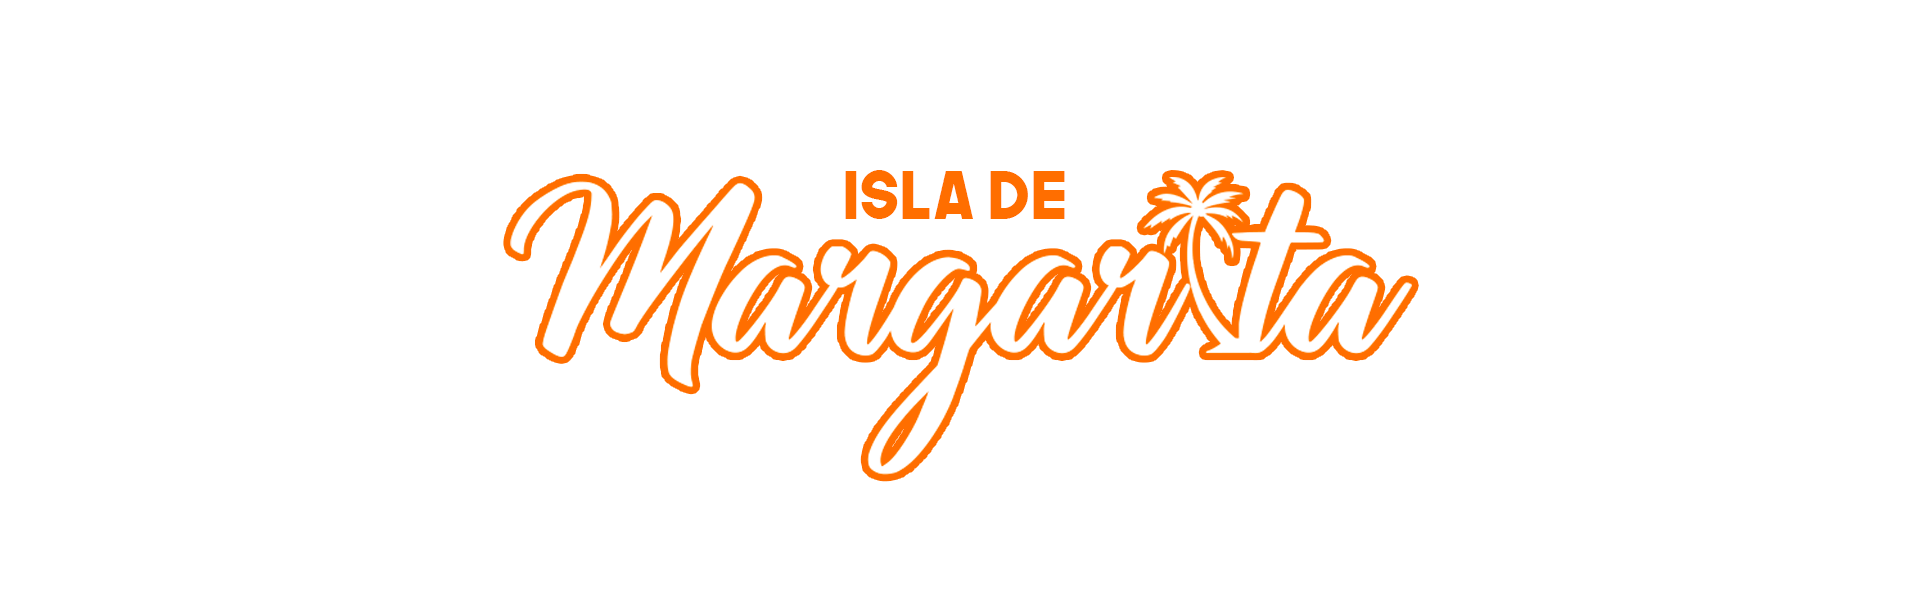 Isla de Margarita